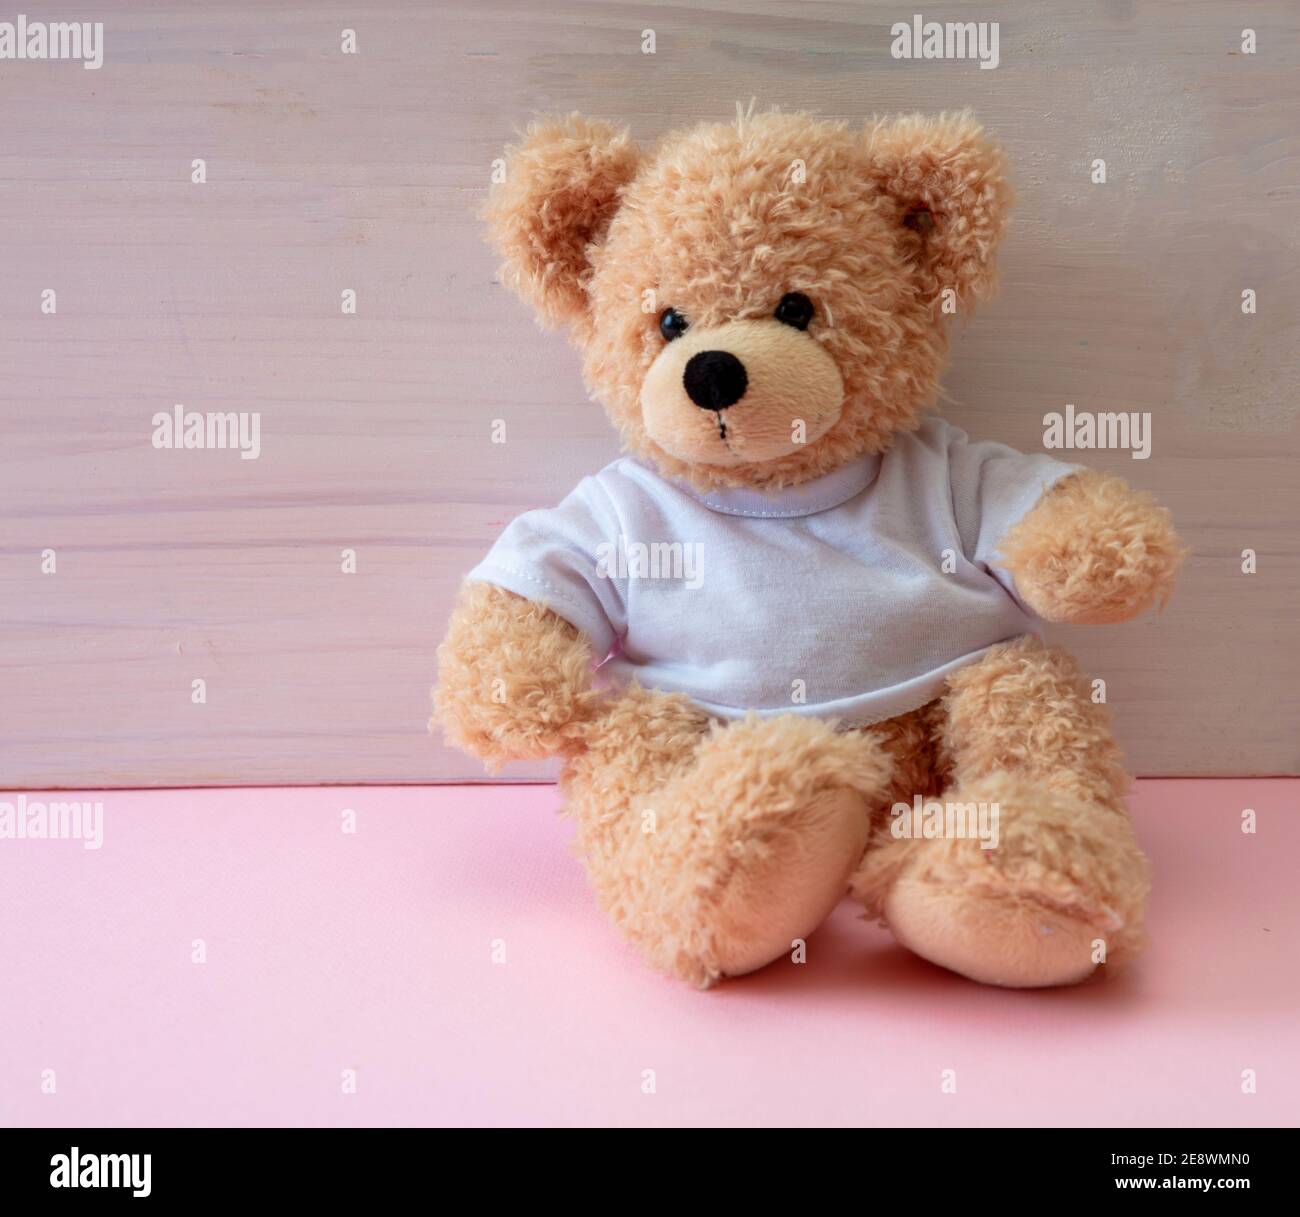 Teddy-Mädchen sitzt in einem leeren Raum, pastellrosa Farbe Boden, weiß Holz Wand Hintergrund, Kind allein im Kinderzimmer Konzept Stockfoto